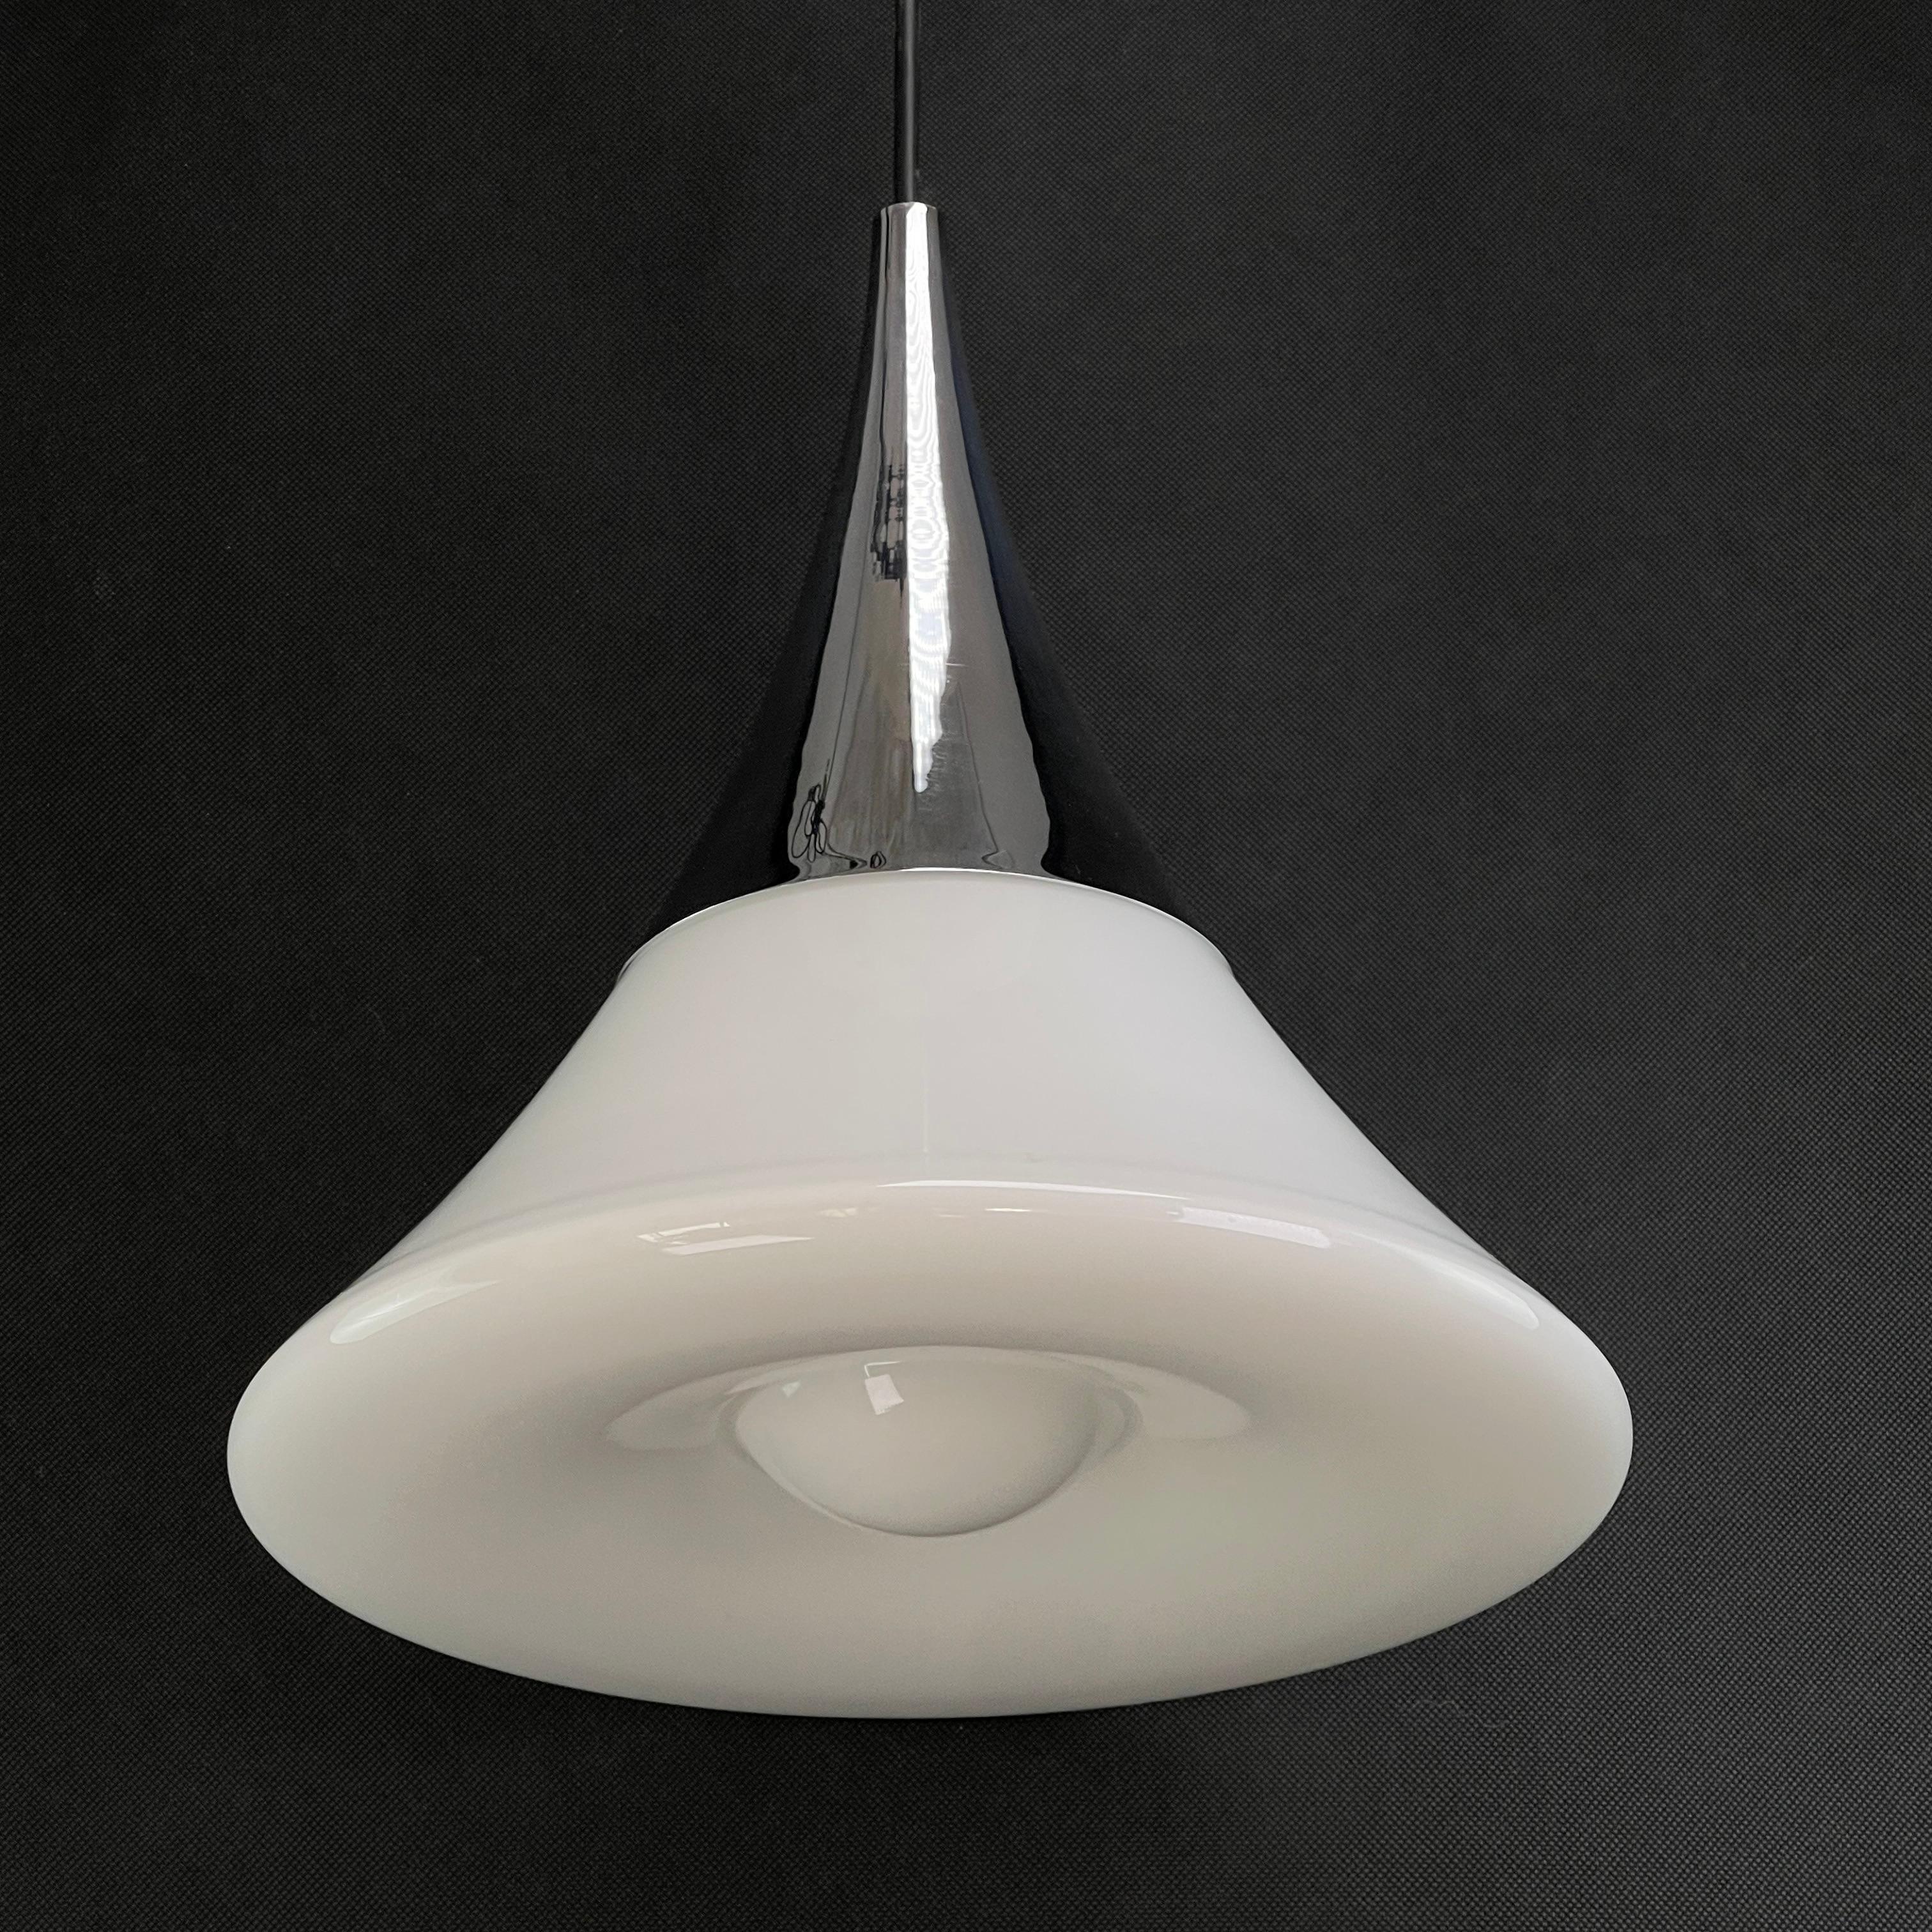 Plafonnier de Glashütte Limburg - années 1960

Cette lampe blanche et argentée est un véritable classique du design des années 1960. 
Cette lampe vintage est originale et donne une lumière agréable. Il n'y a qu'un seul point brûlant.

L'article